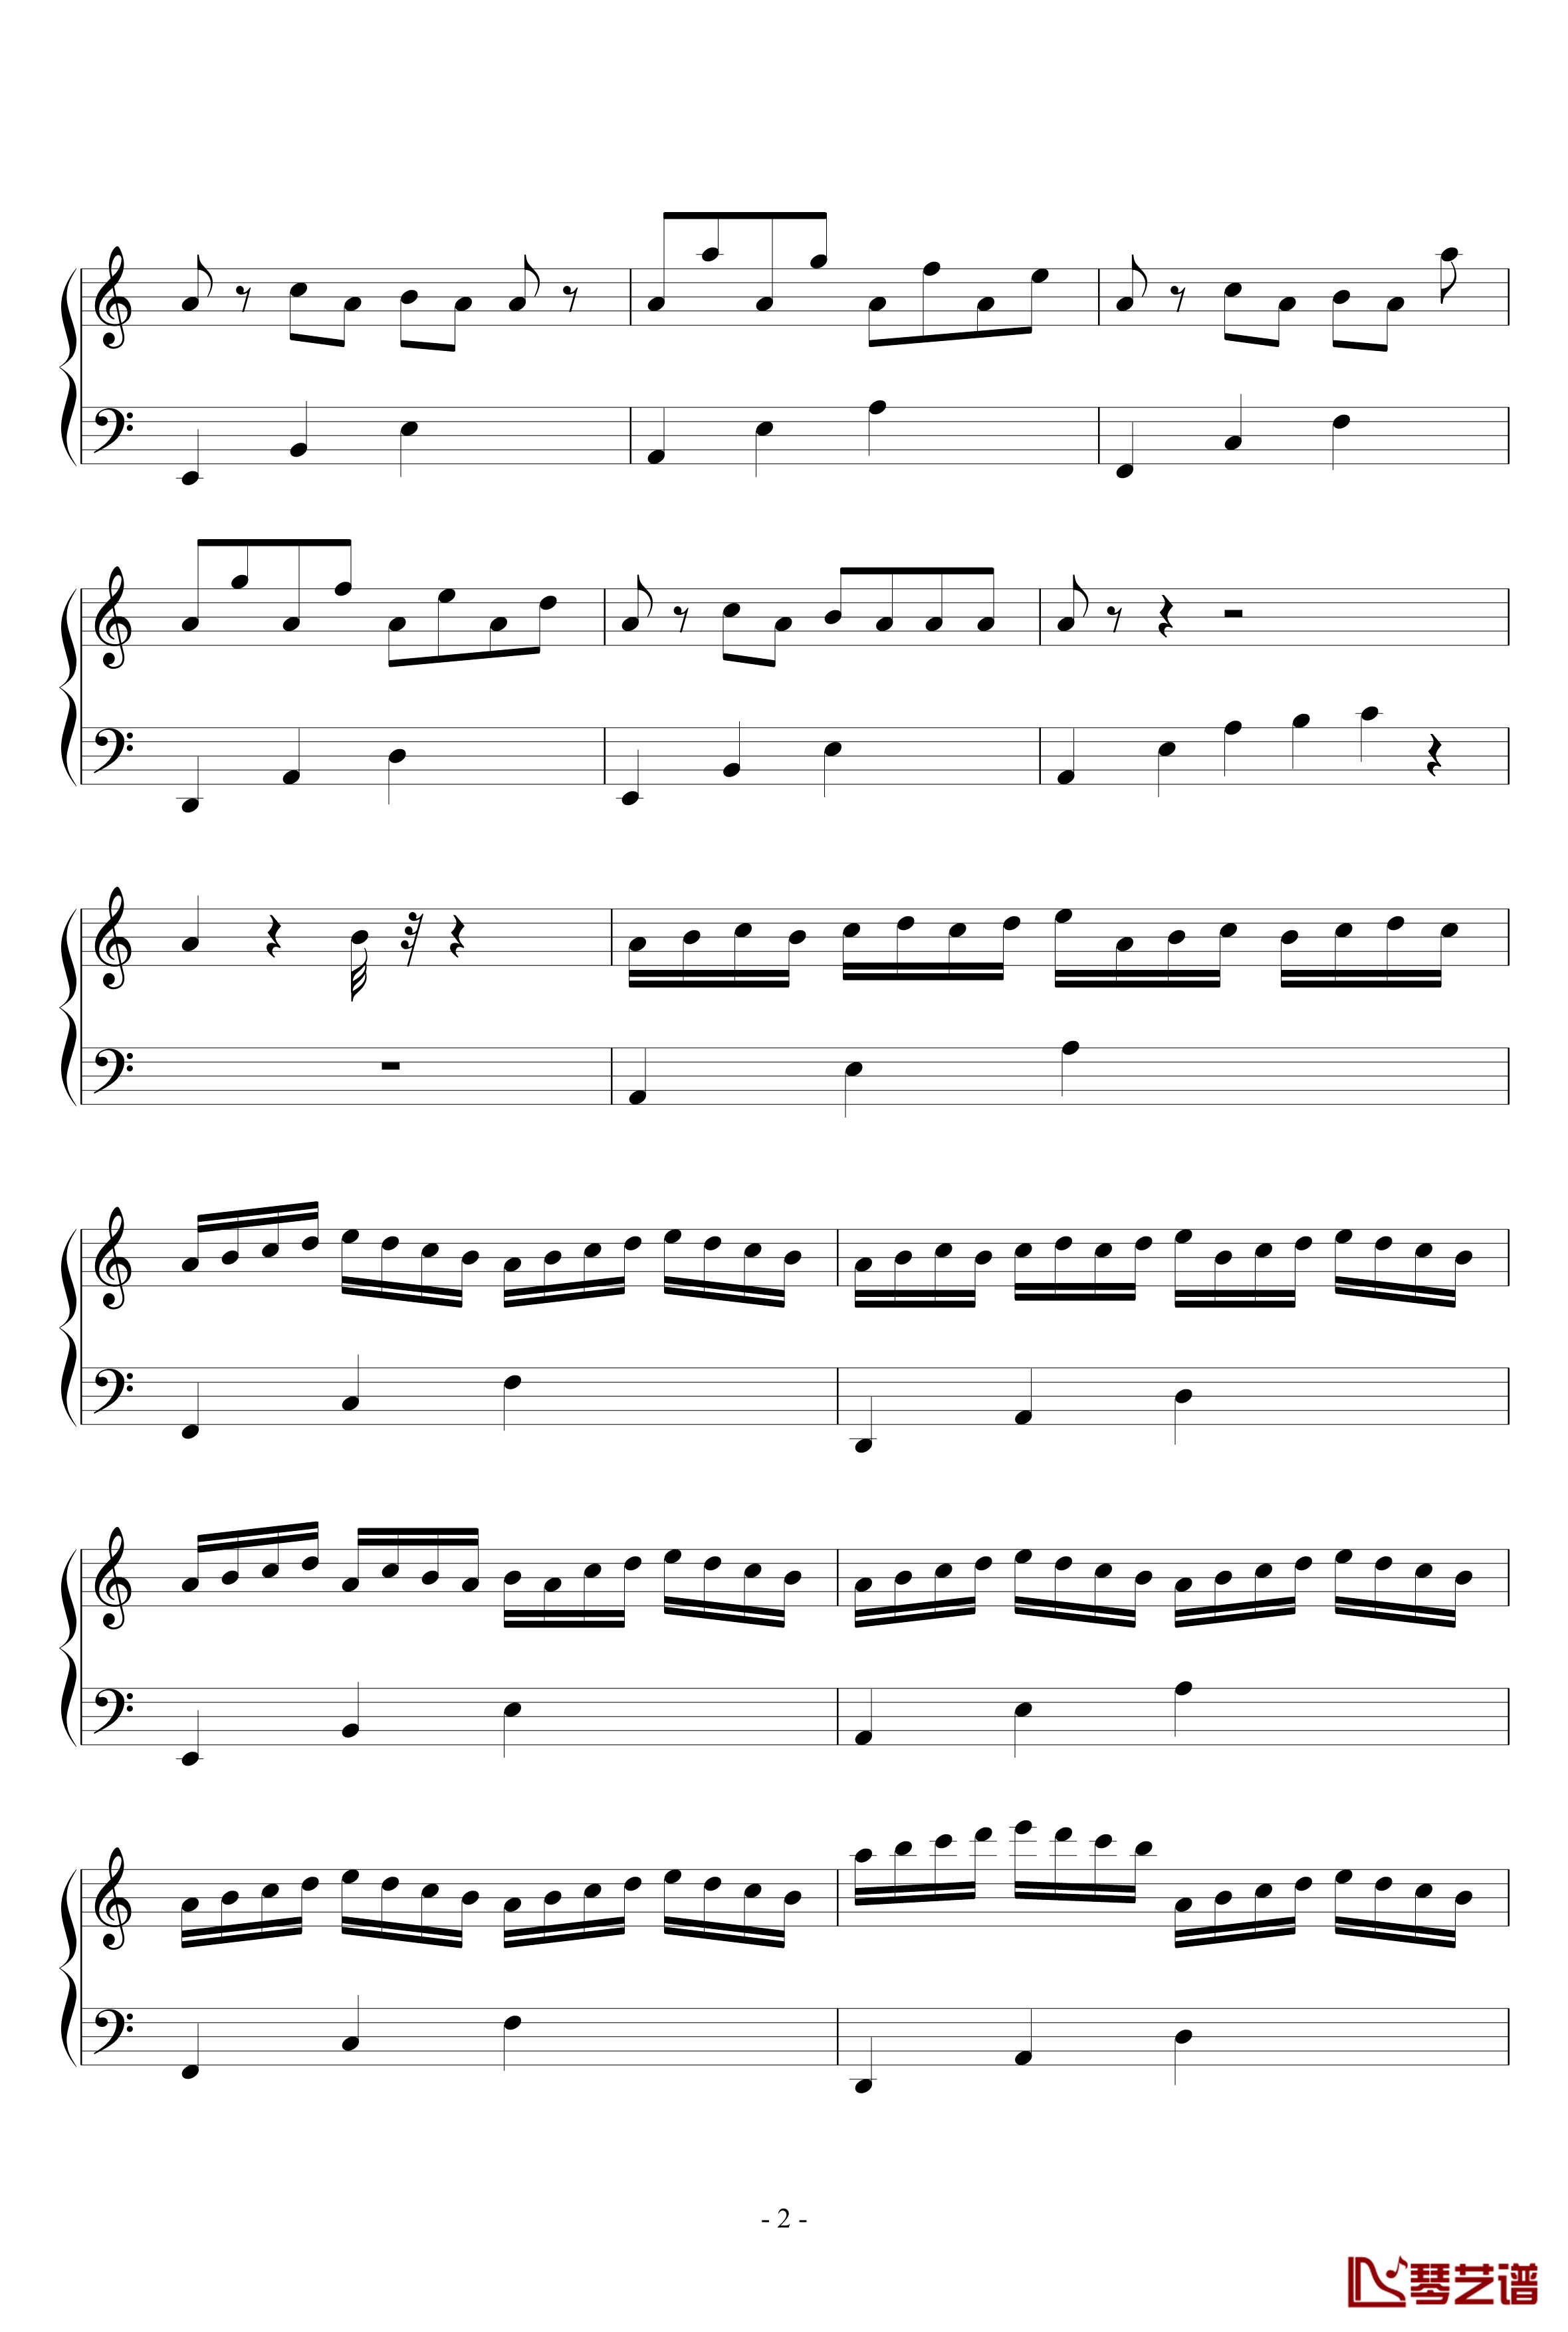 简调的华丽钢琴谱-第六章-王科健2